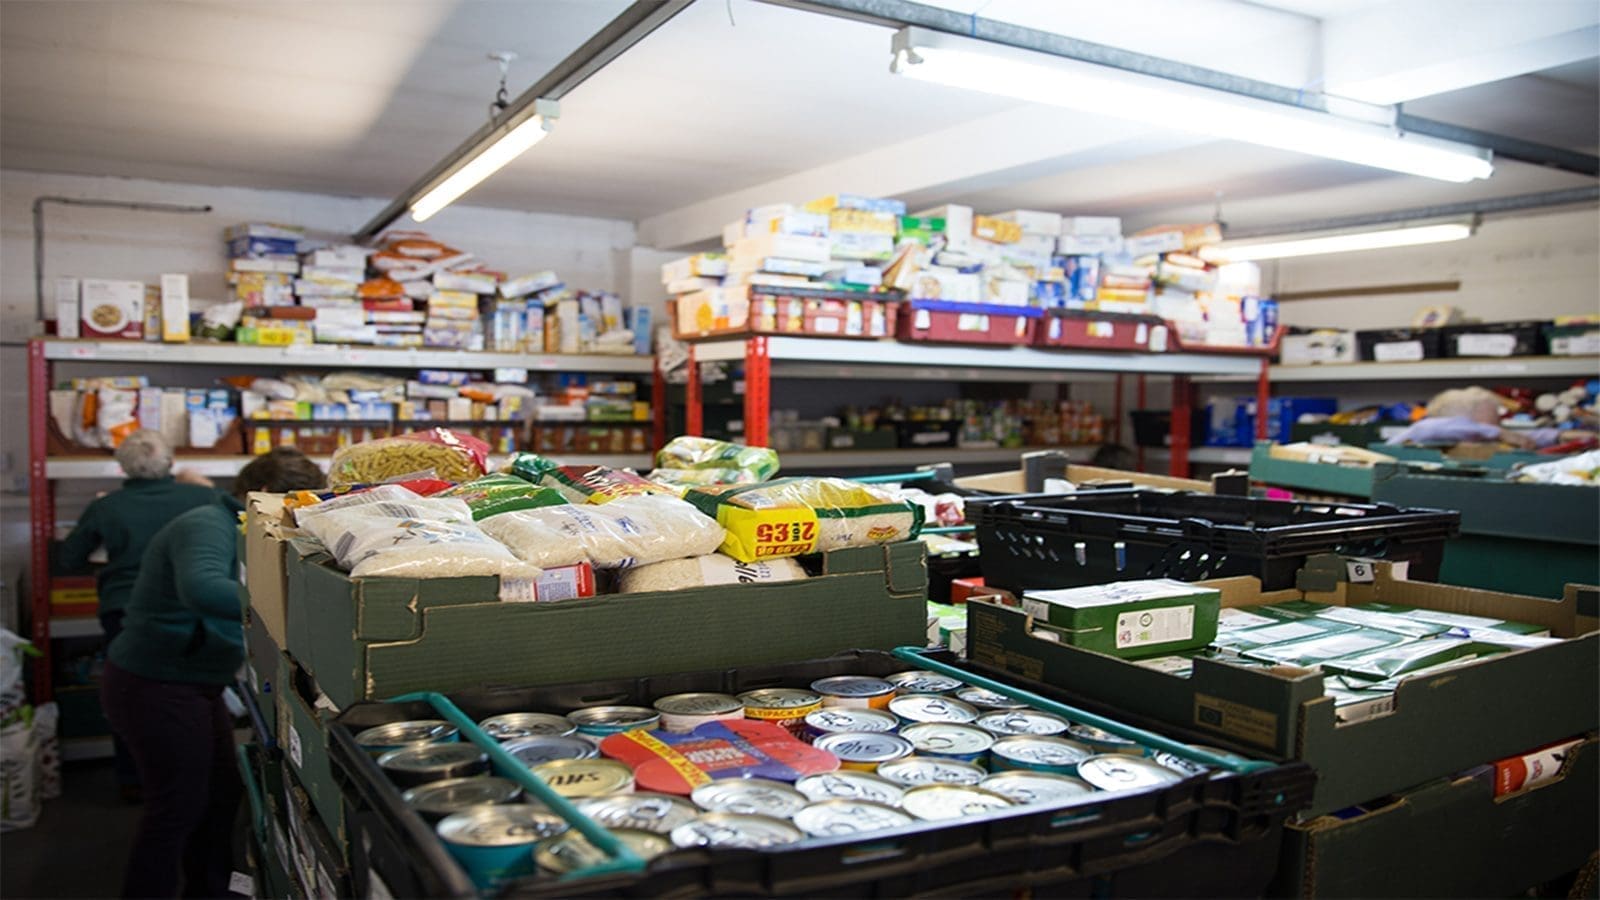 Food Standards Agency seeks ways of supporting food banks, charities